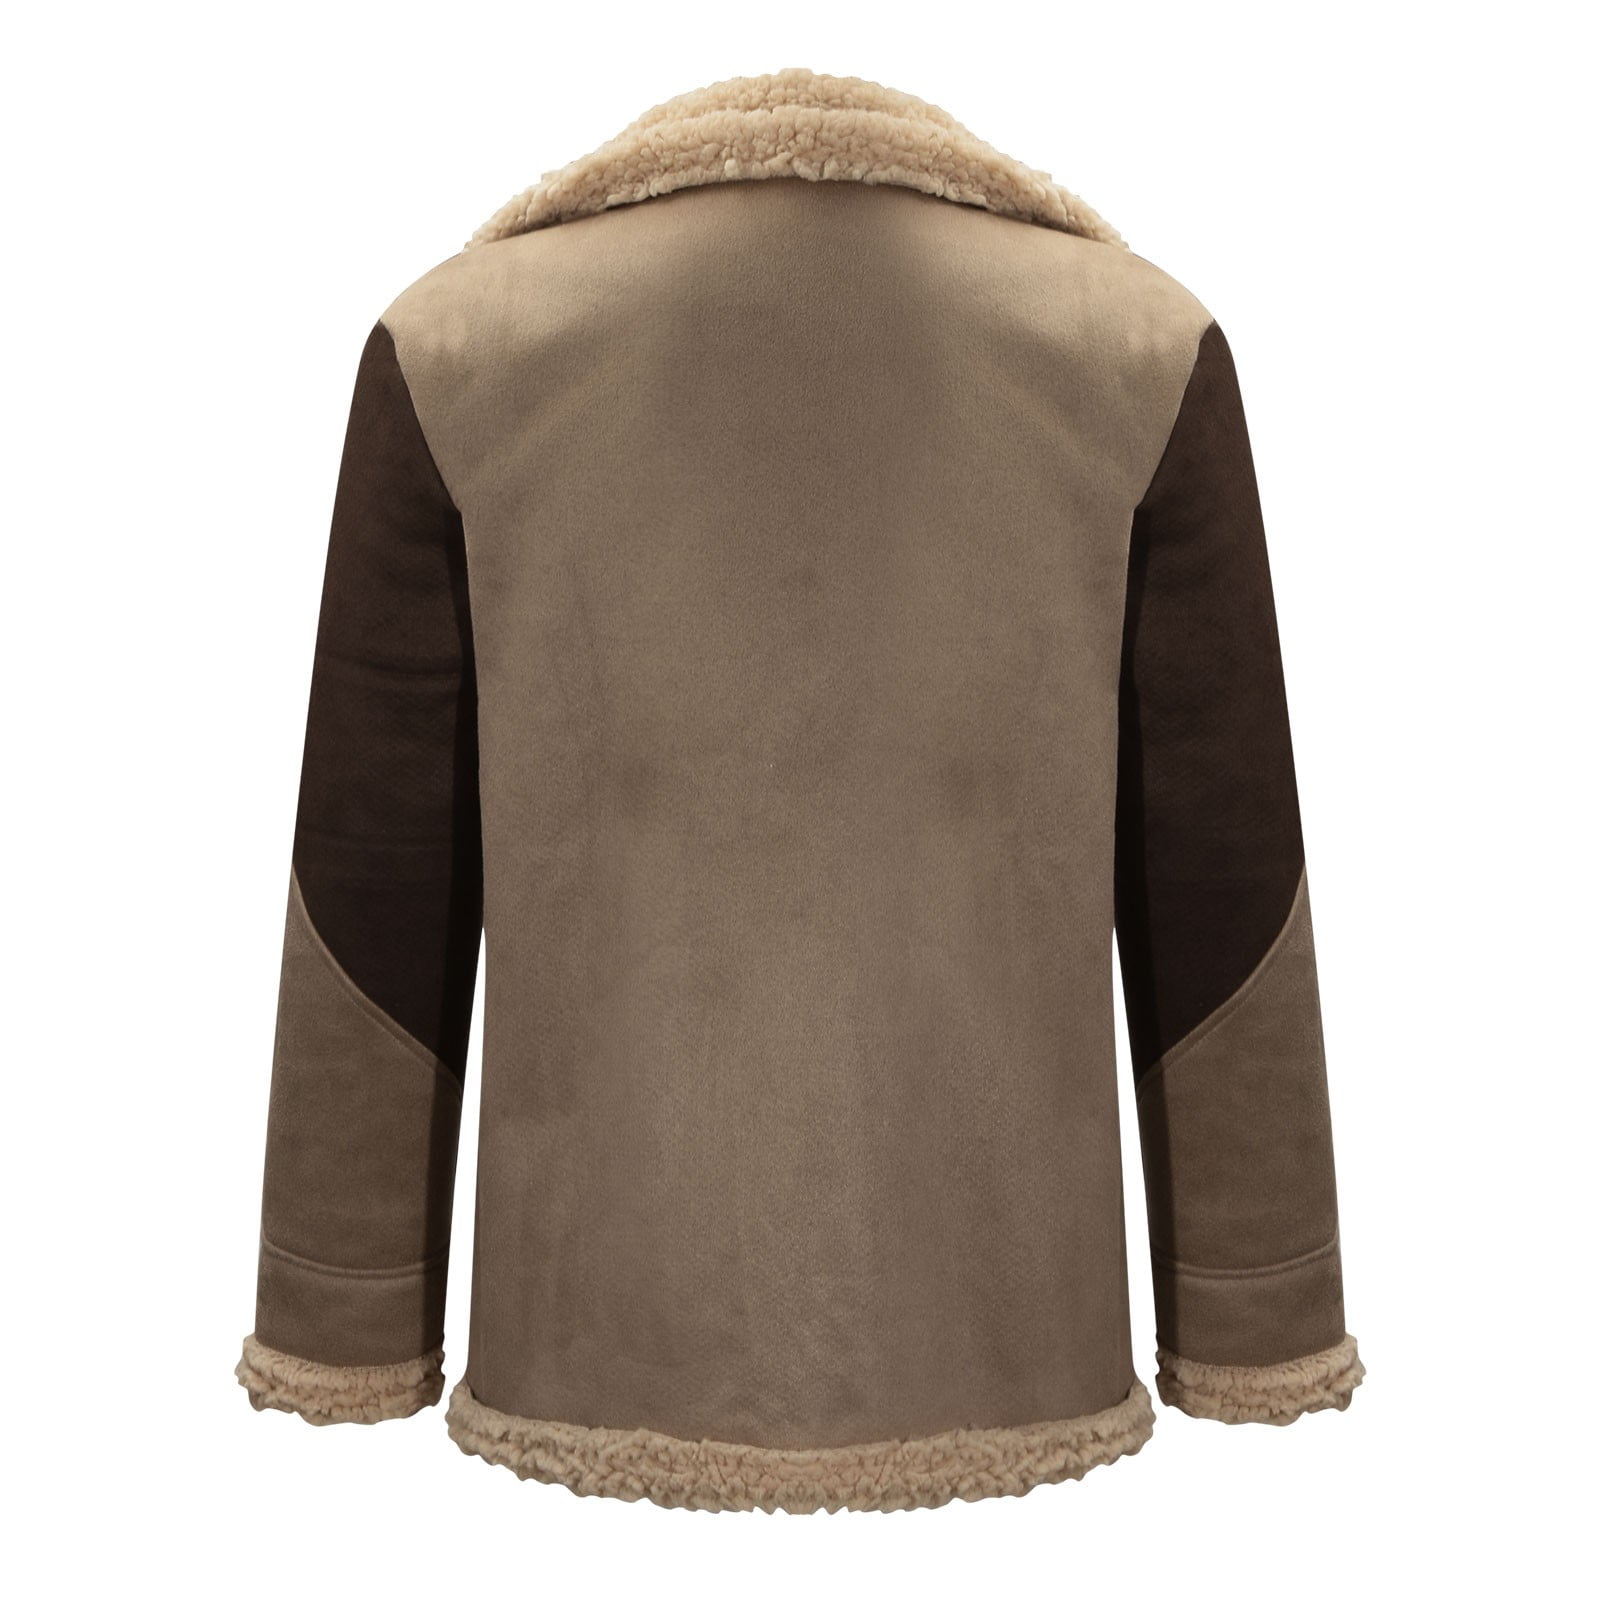 Men's Fashion Wool Lined Jacket Classic Lapel Zipper Flying Jacket Vintage  Fit Warm Windbreaker Cardigan